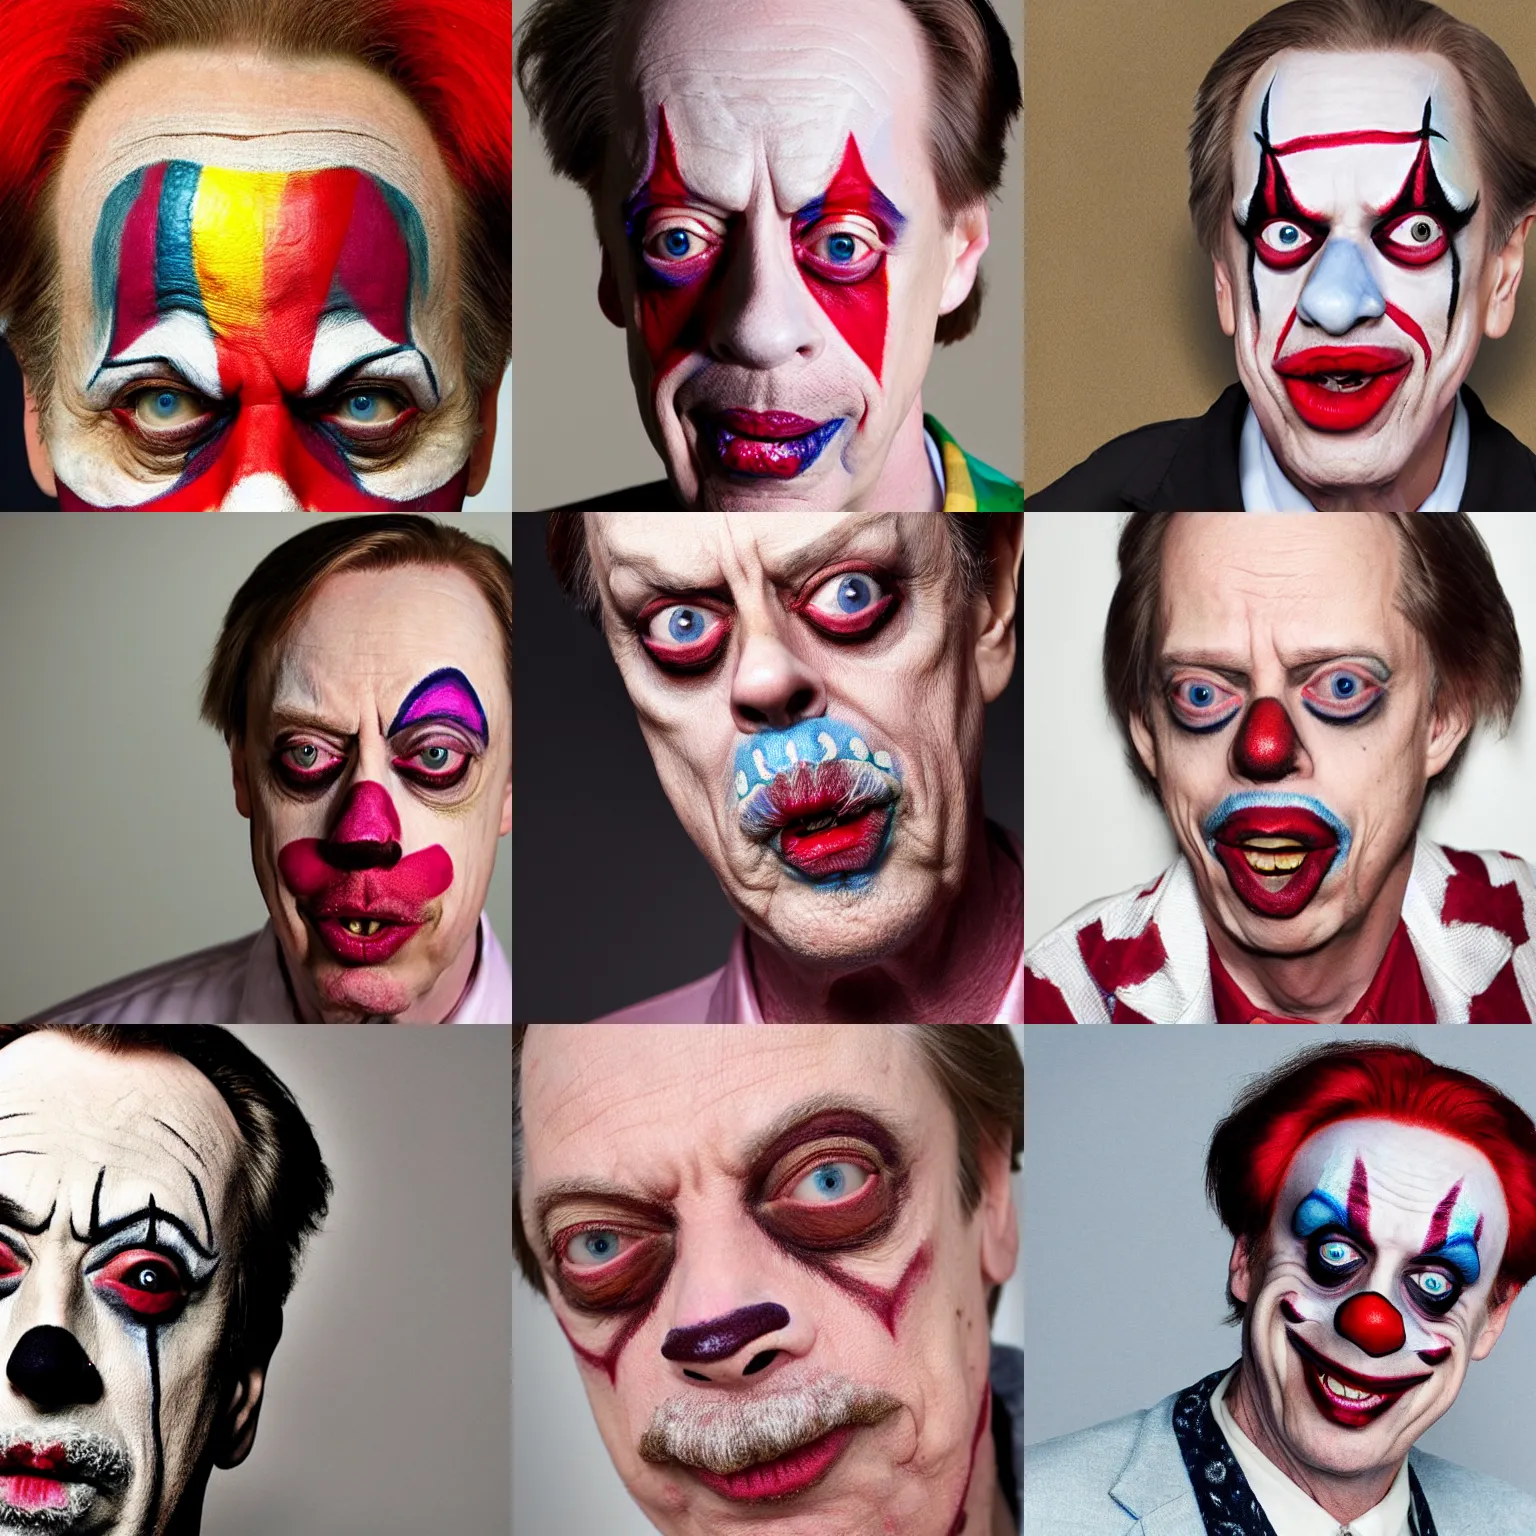 Prompt: Steve Buscemi in clown makeup